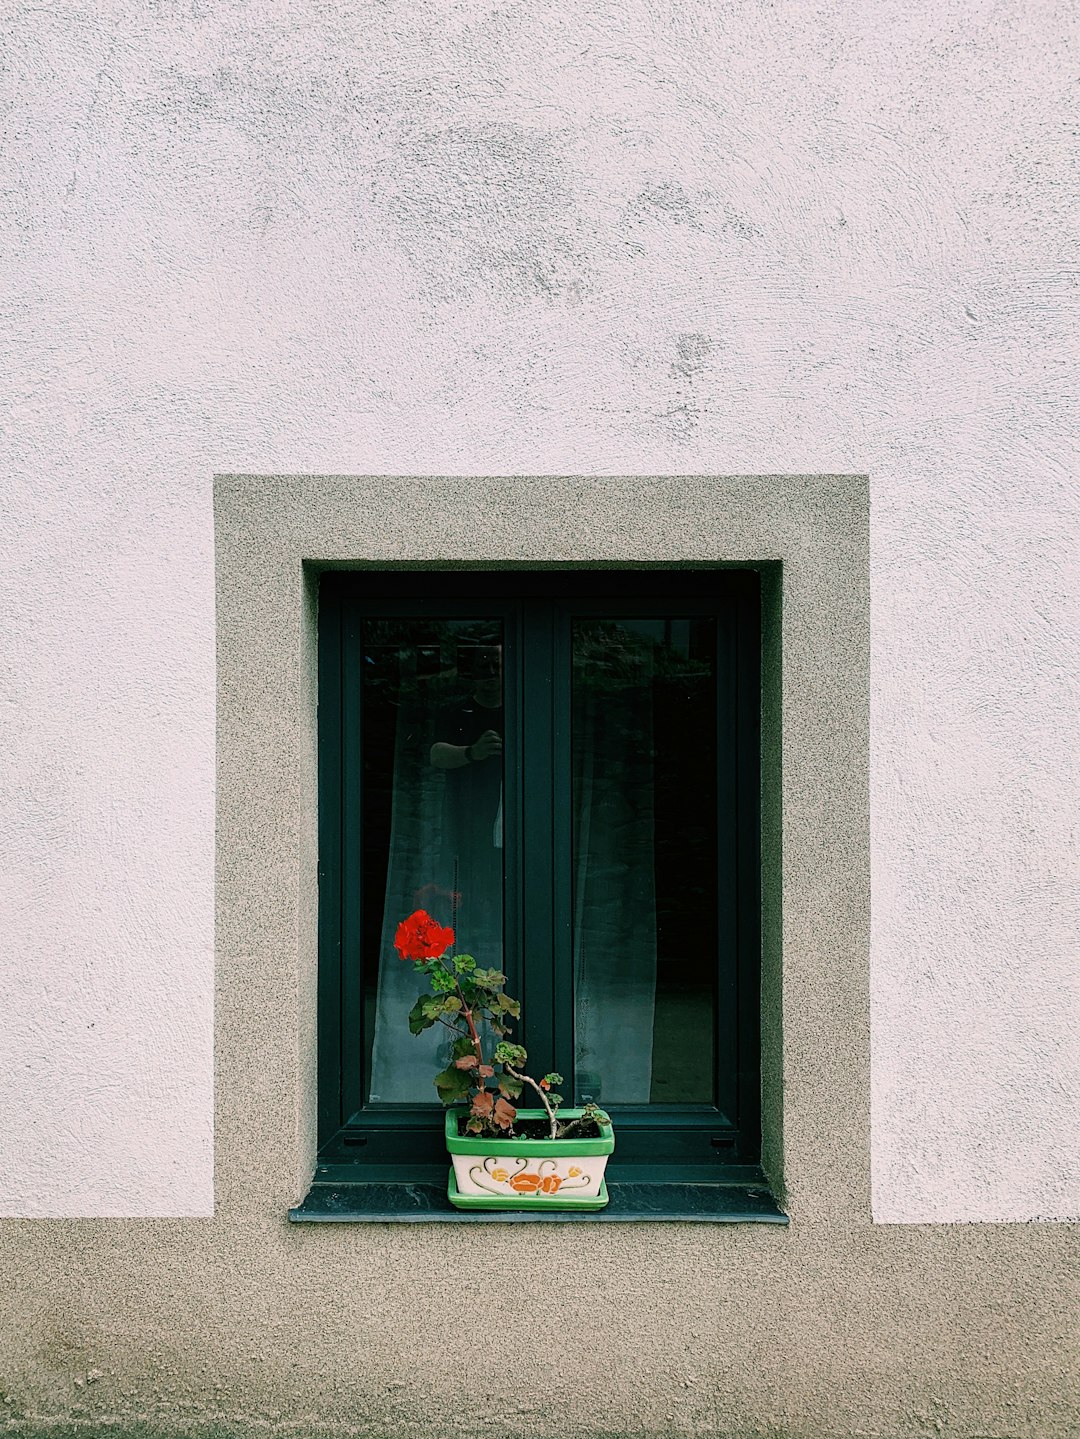 red flower outside window